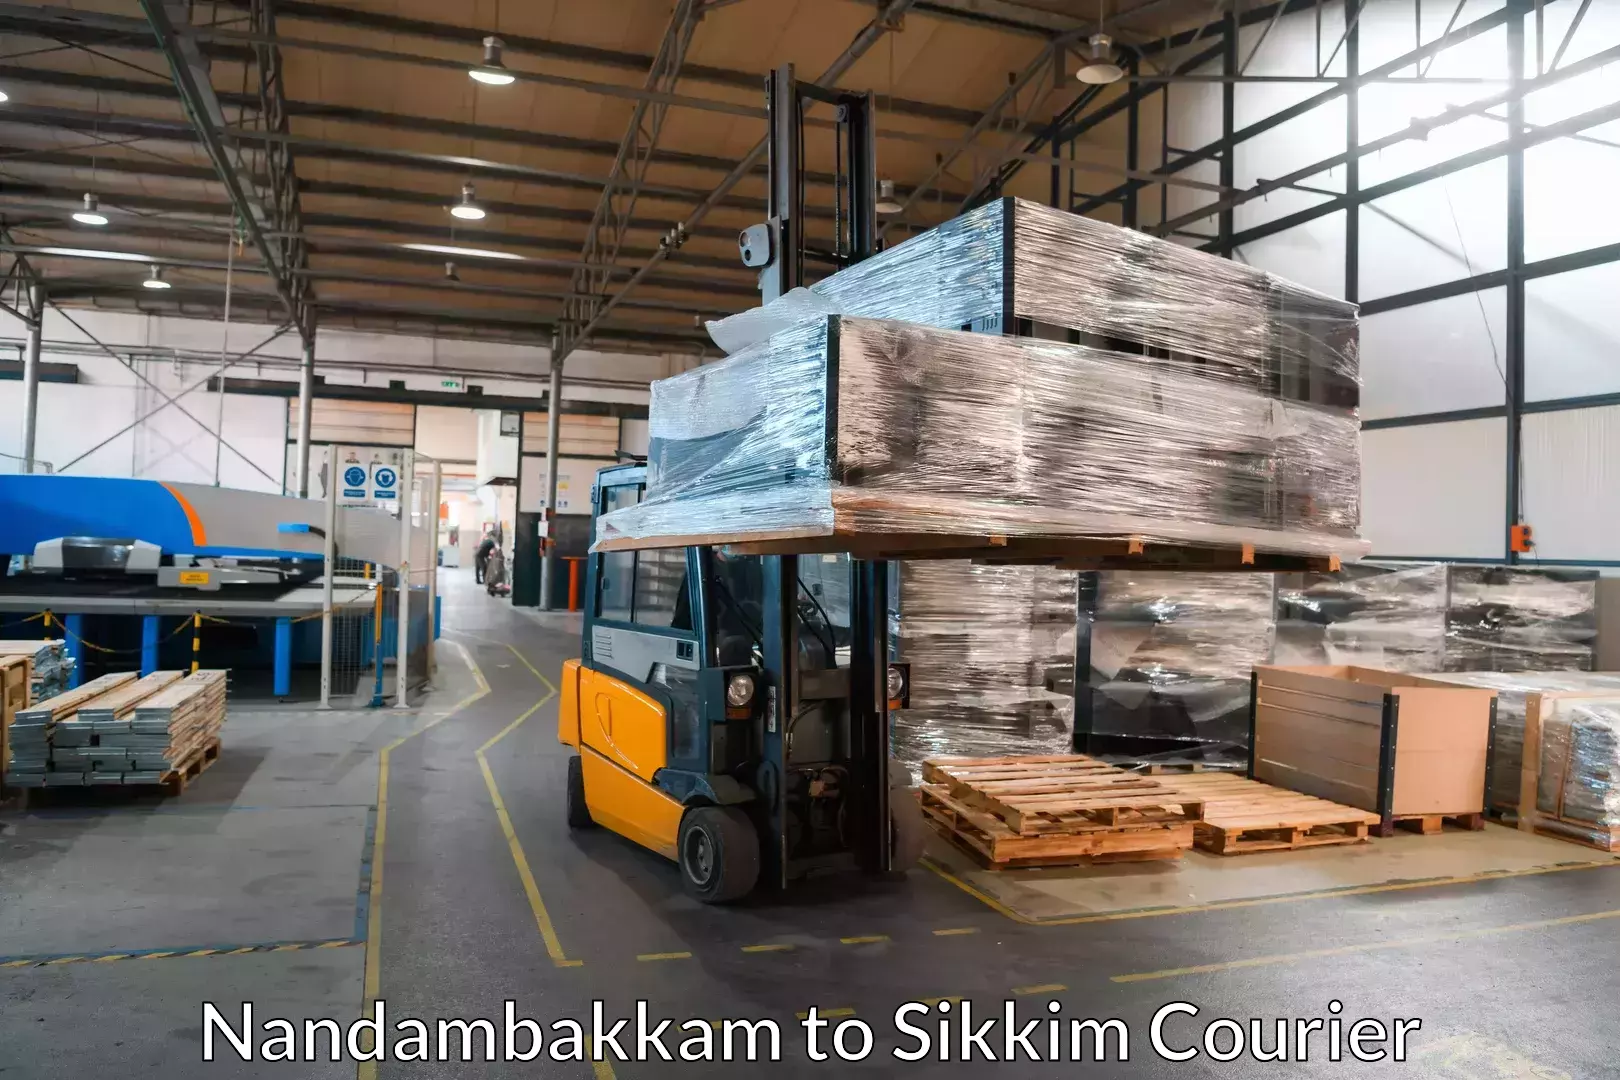 Furniture transport experts Nandambakkam to Mangan